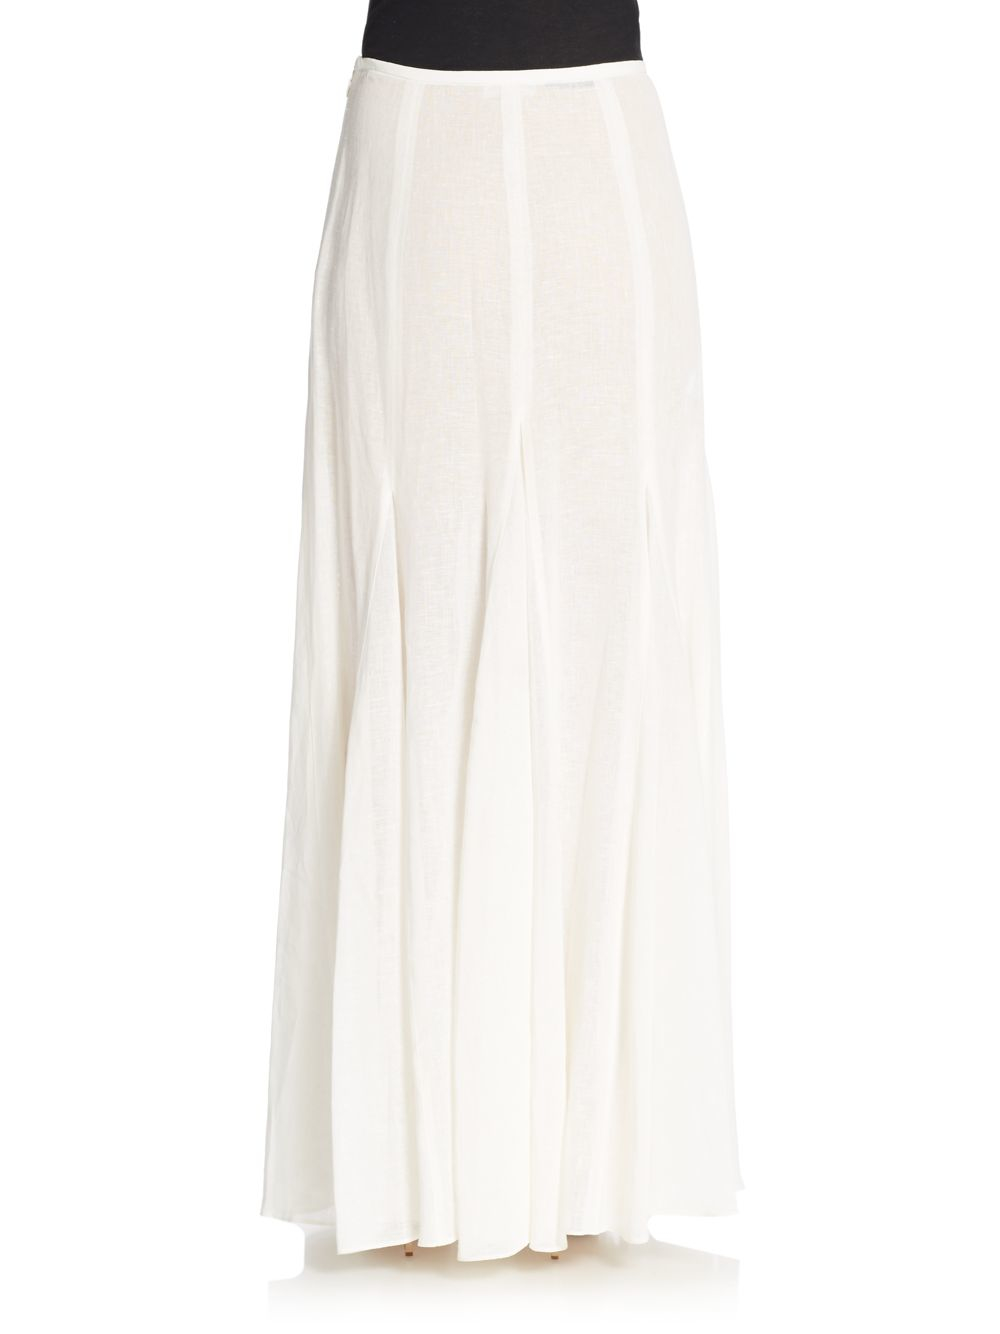 Michael Kors Linen Godet Maxi Skirt in Ivory (White) - Lyst